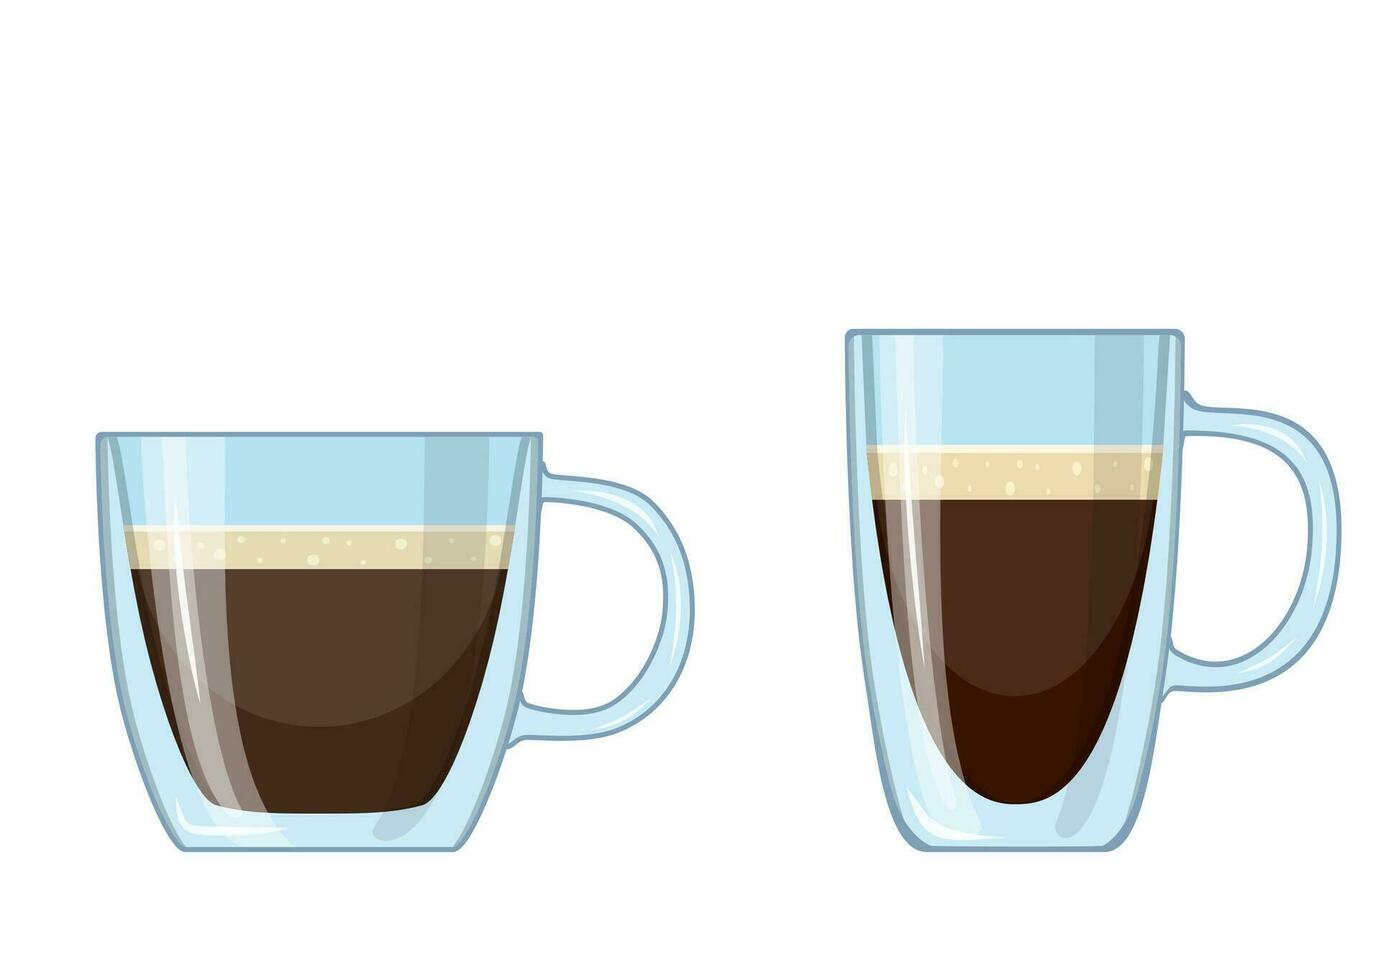 kaffe kopp ikon isolerat på vit bakgrund. vektor illustration i platt stil.